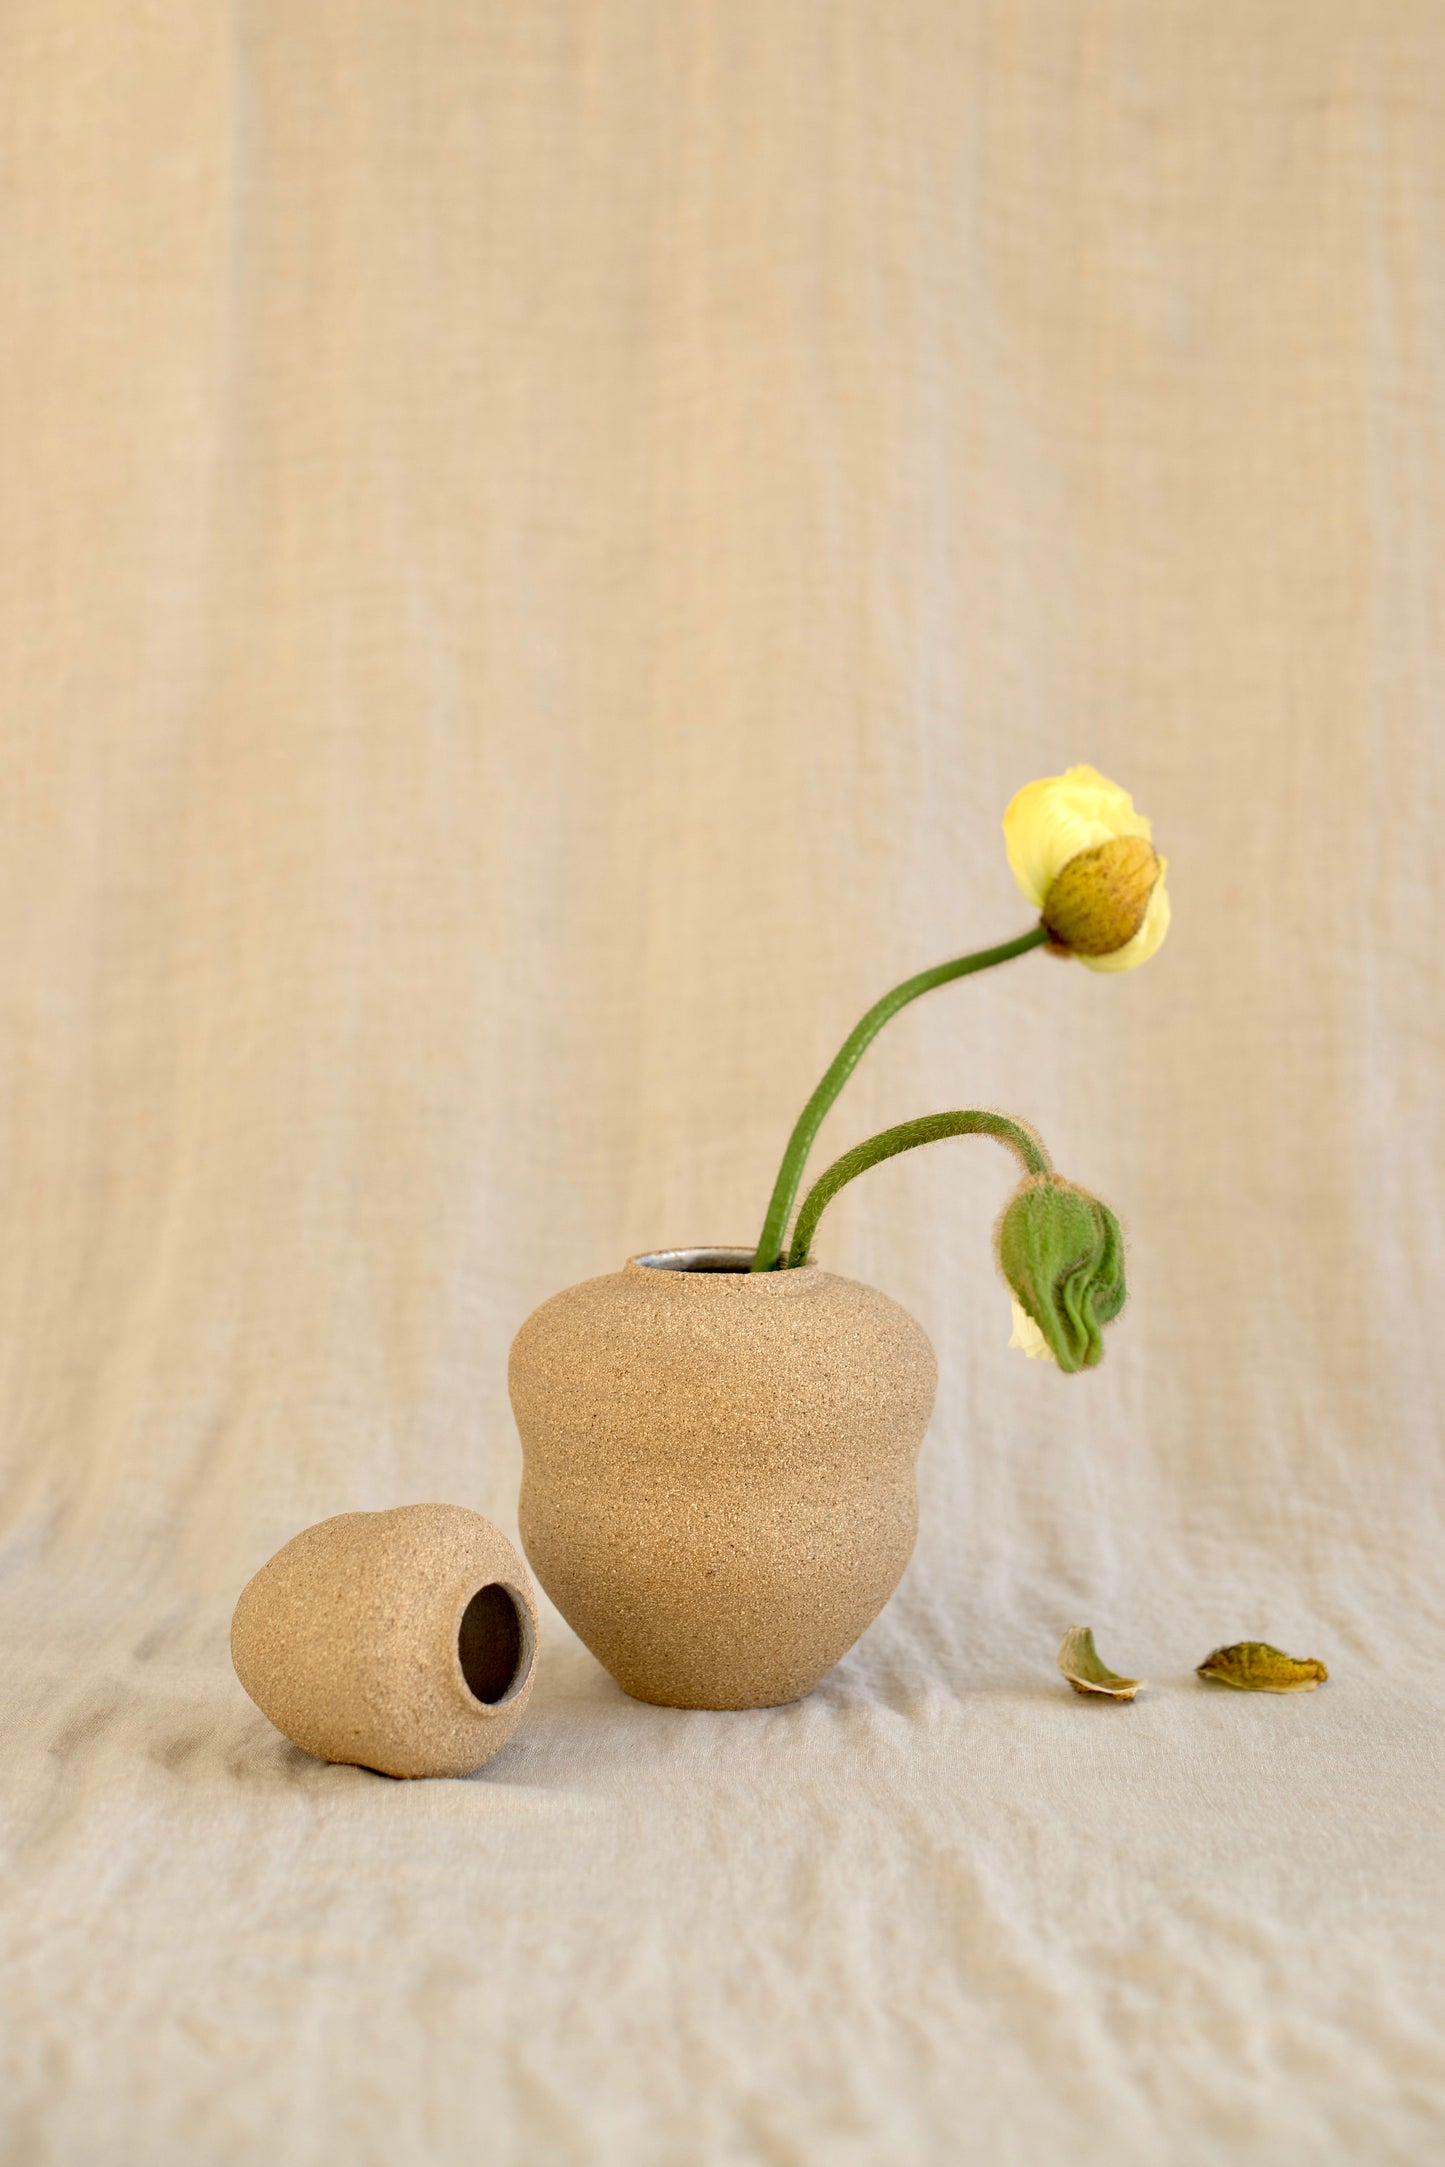 Wide curvy vase - Brown sugar / white